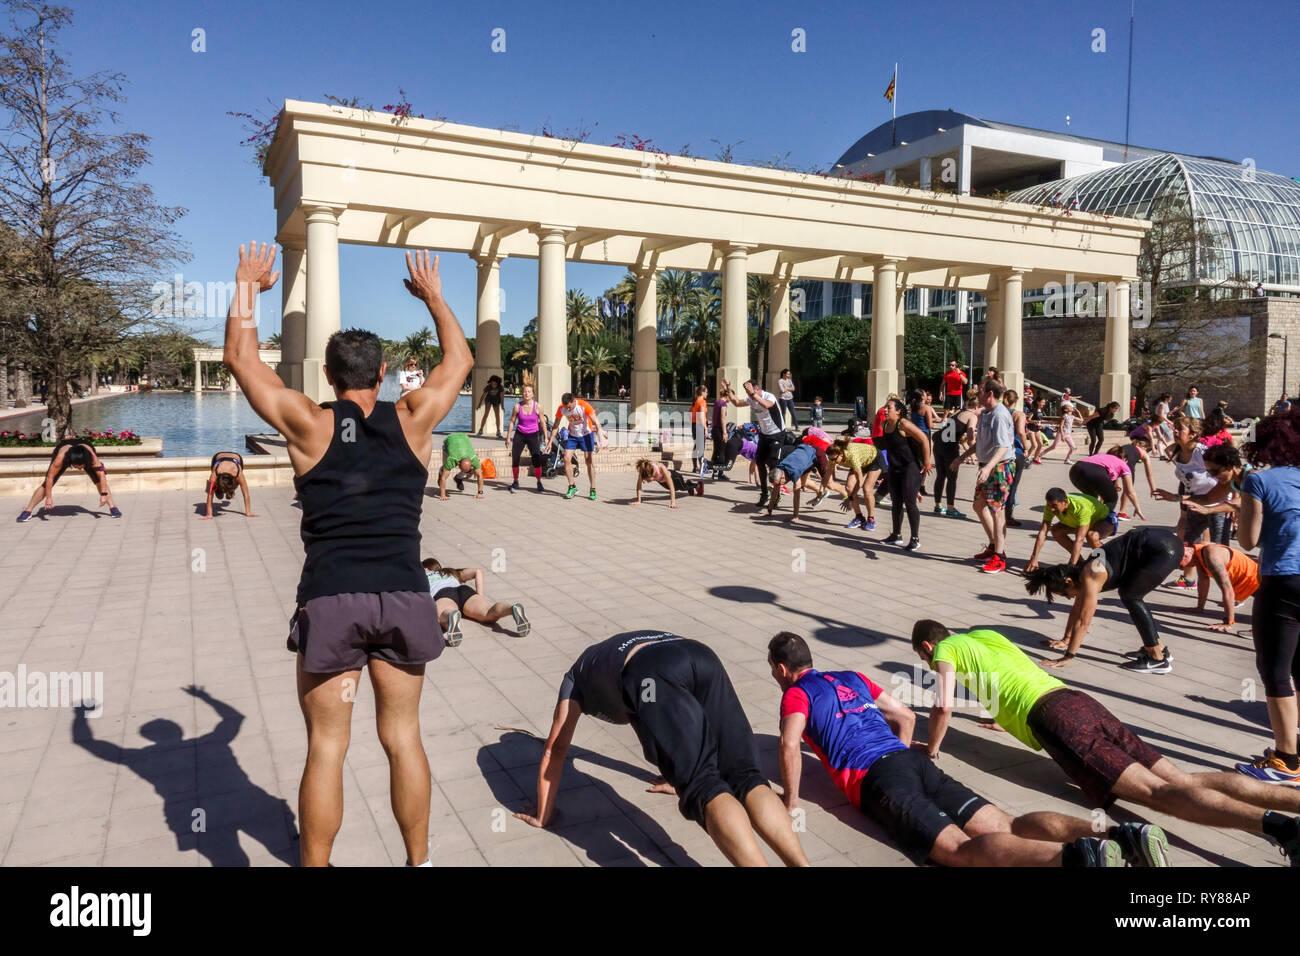 Une foule de personnes s'entraîne dans le parc Valencia Turia, en face du Music Palace, Valencia Espagne fitness en plein air Banque D'Images